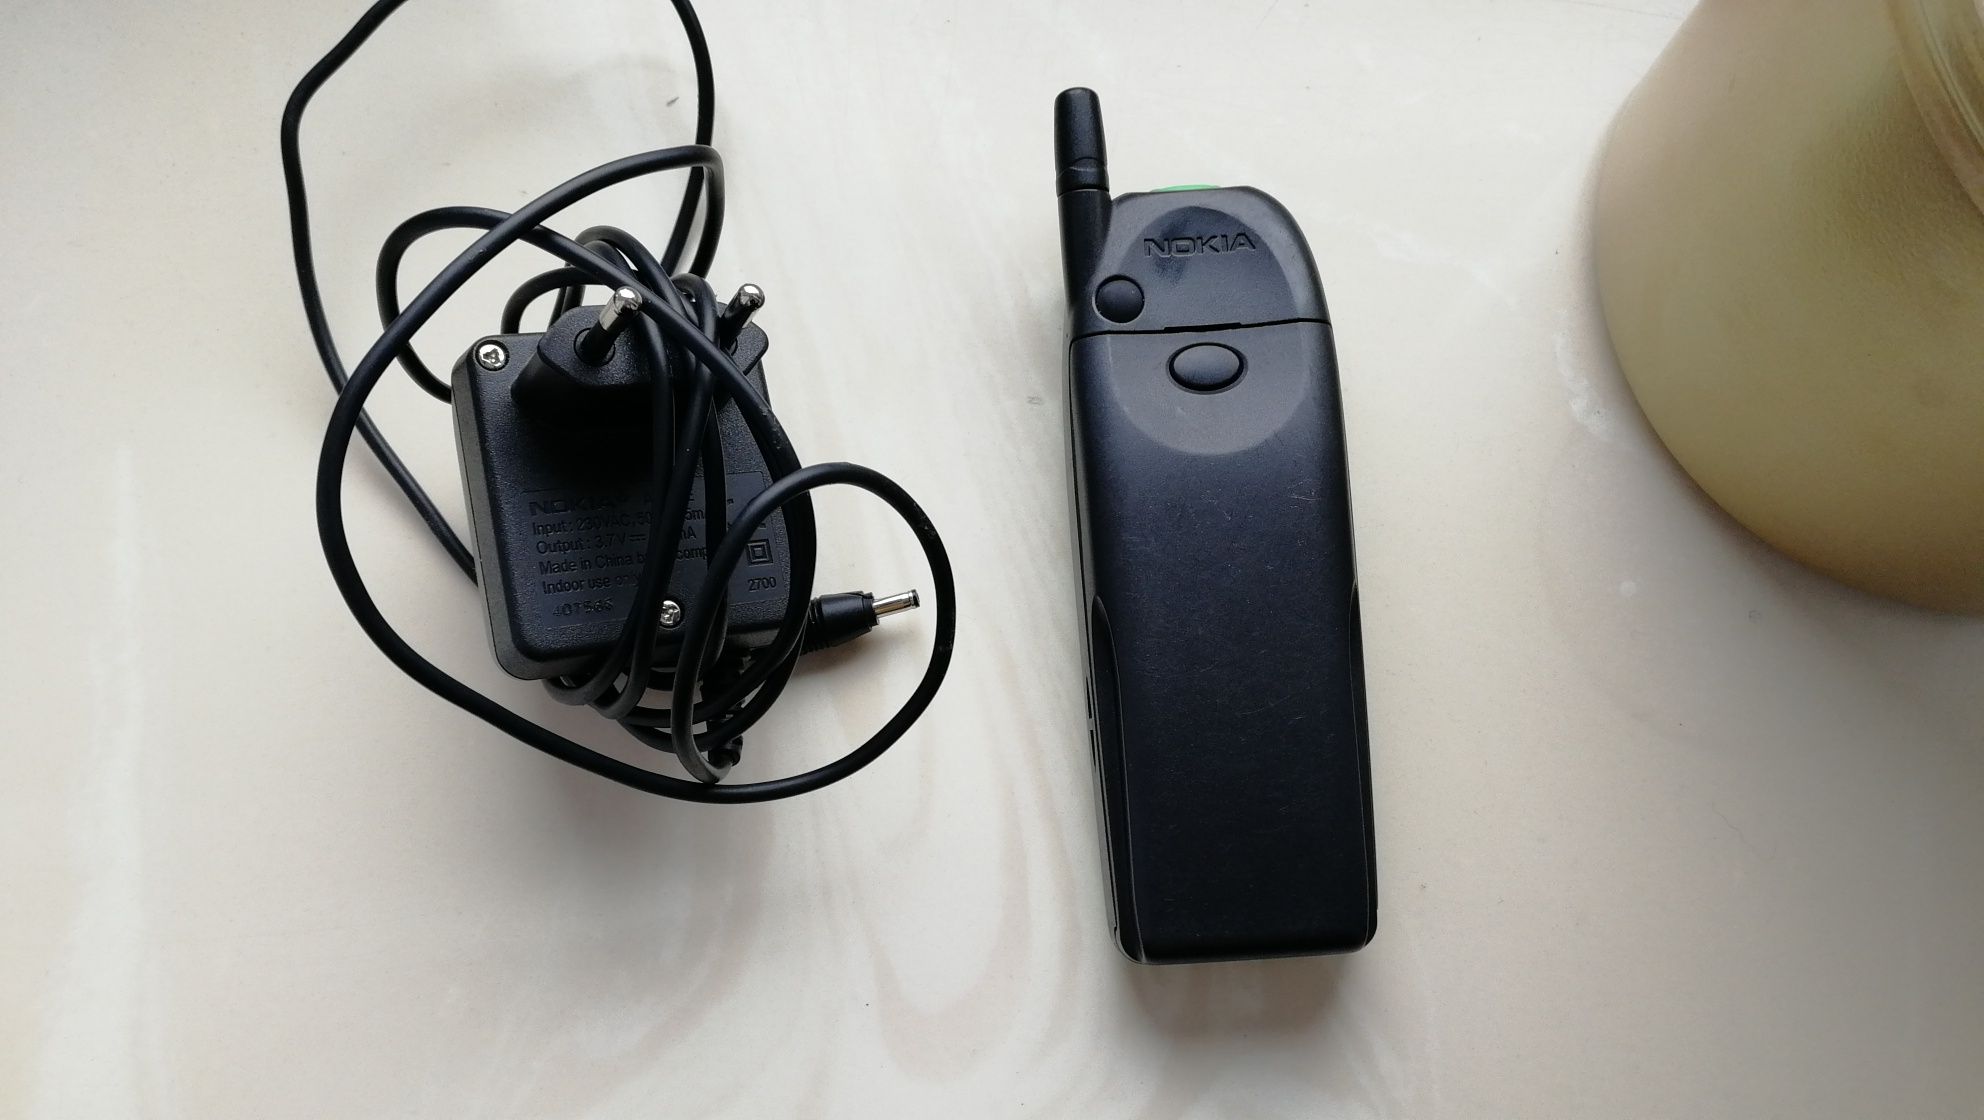 Nokia 5110 z baterią vibracyjną